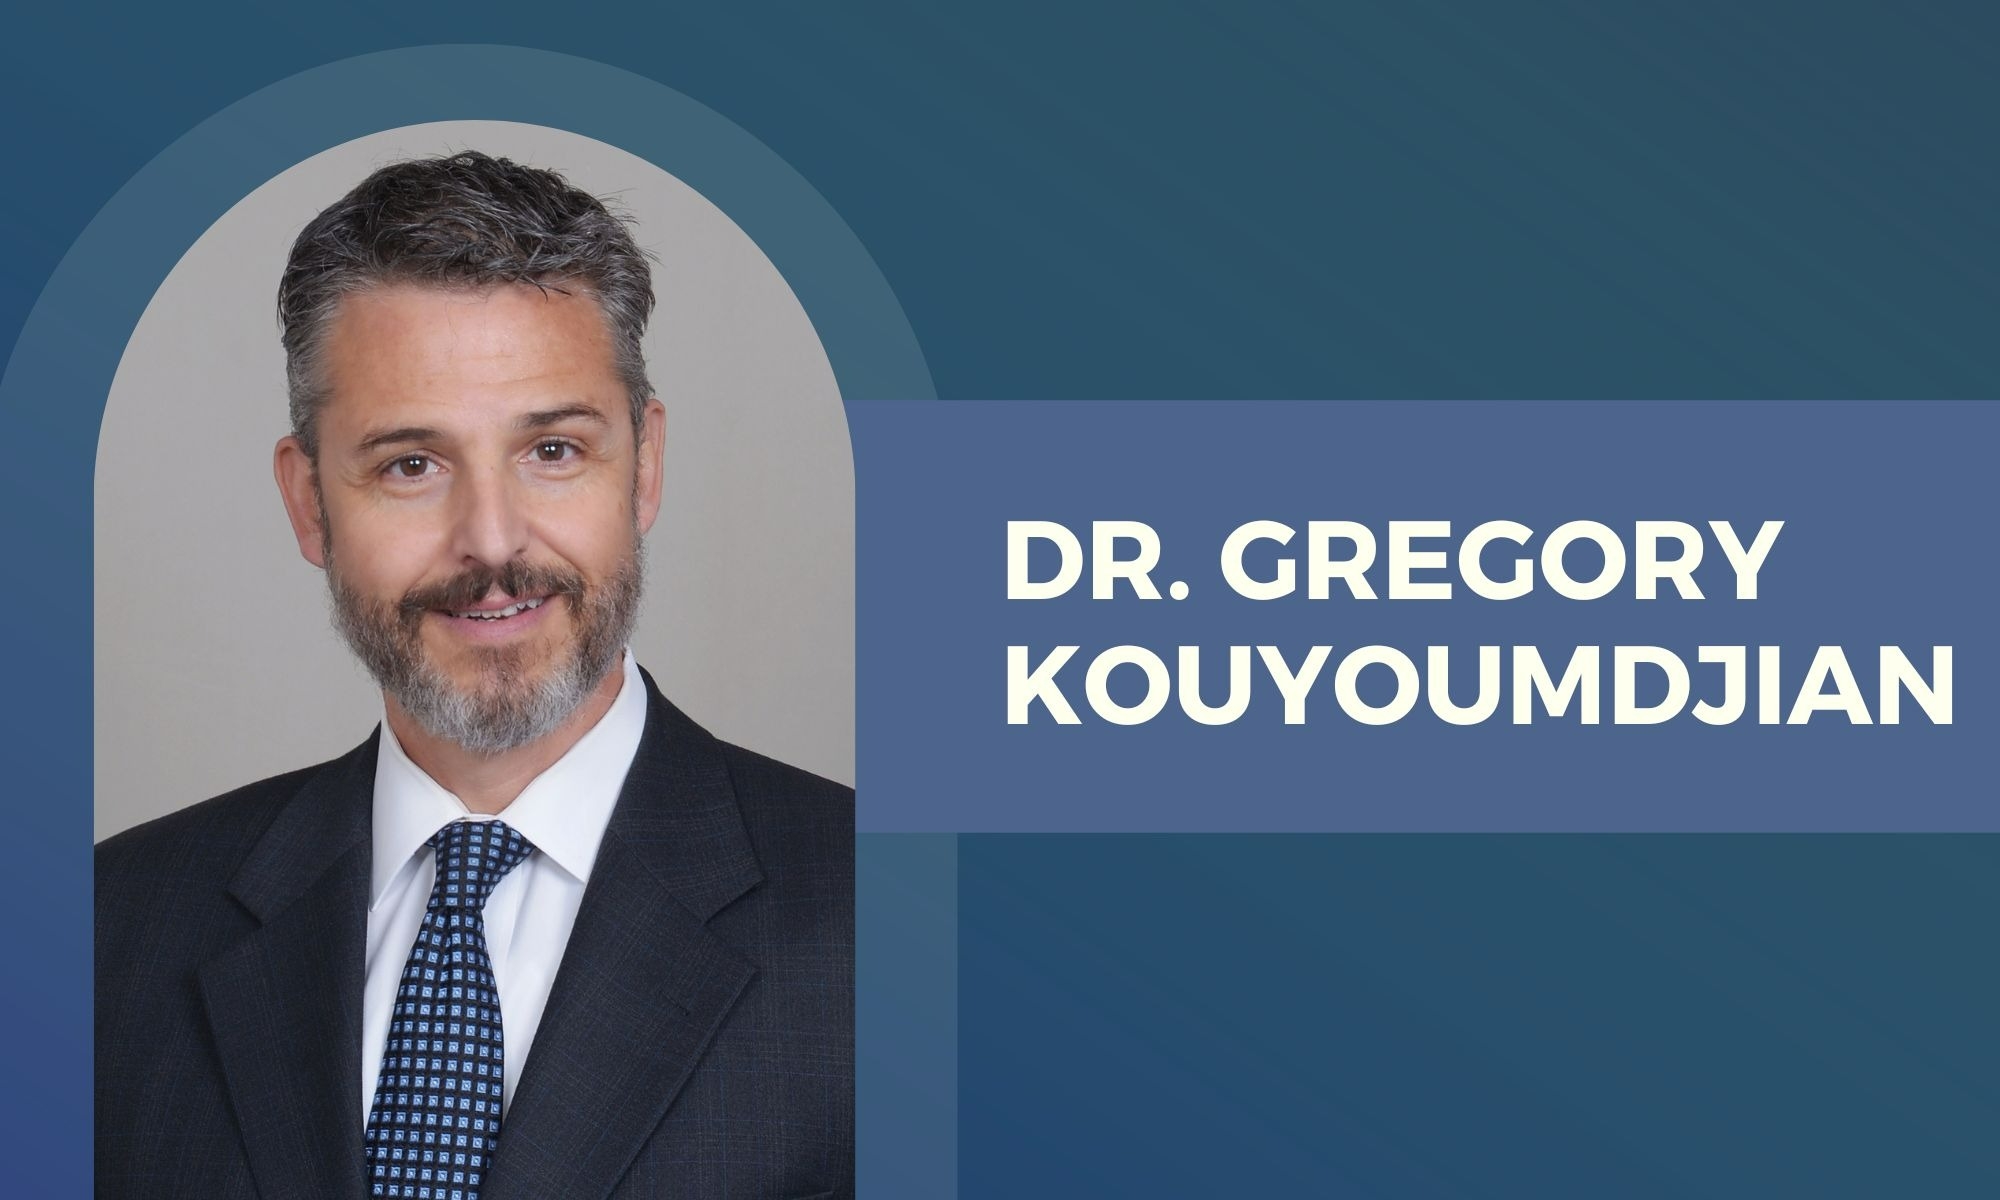 
Welcoming Dr. Gregory Kouyoumdjian